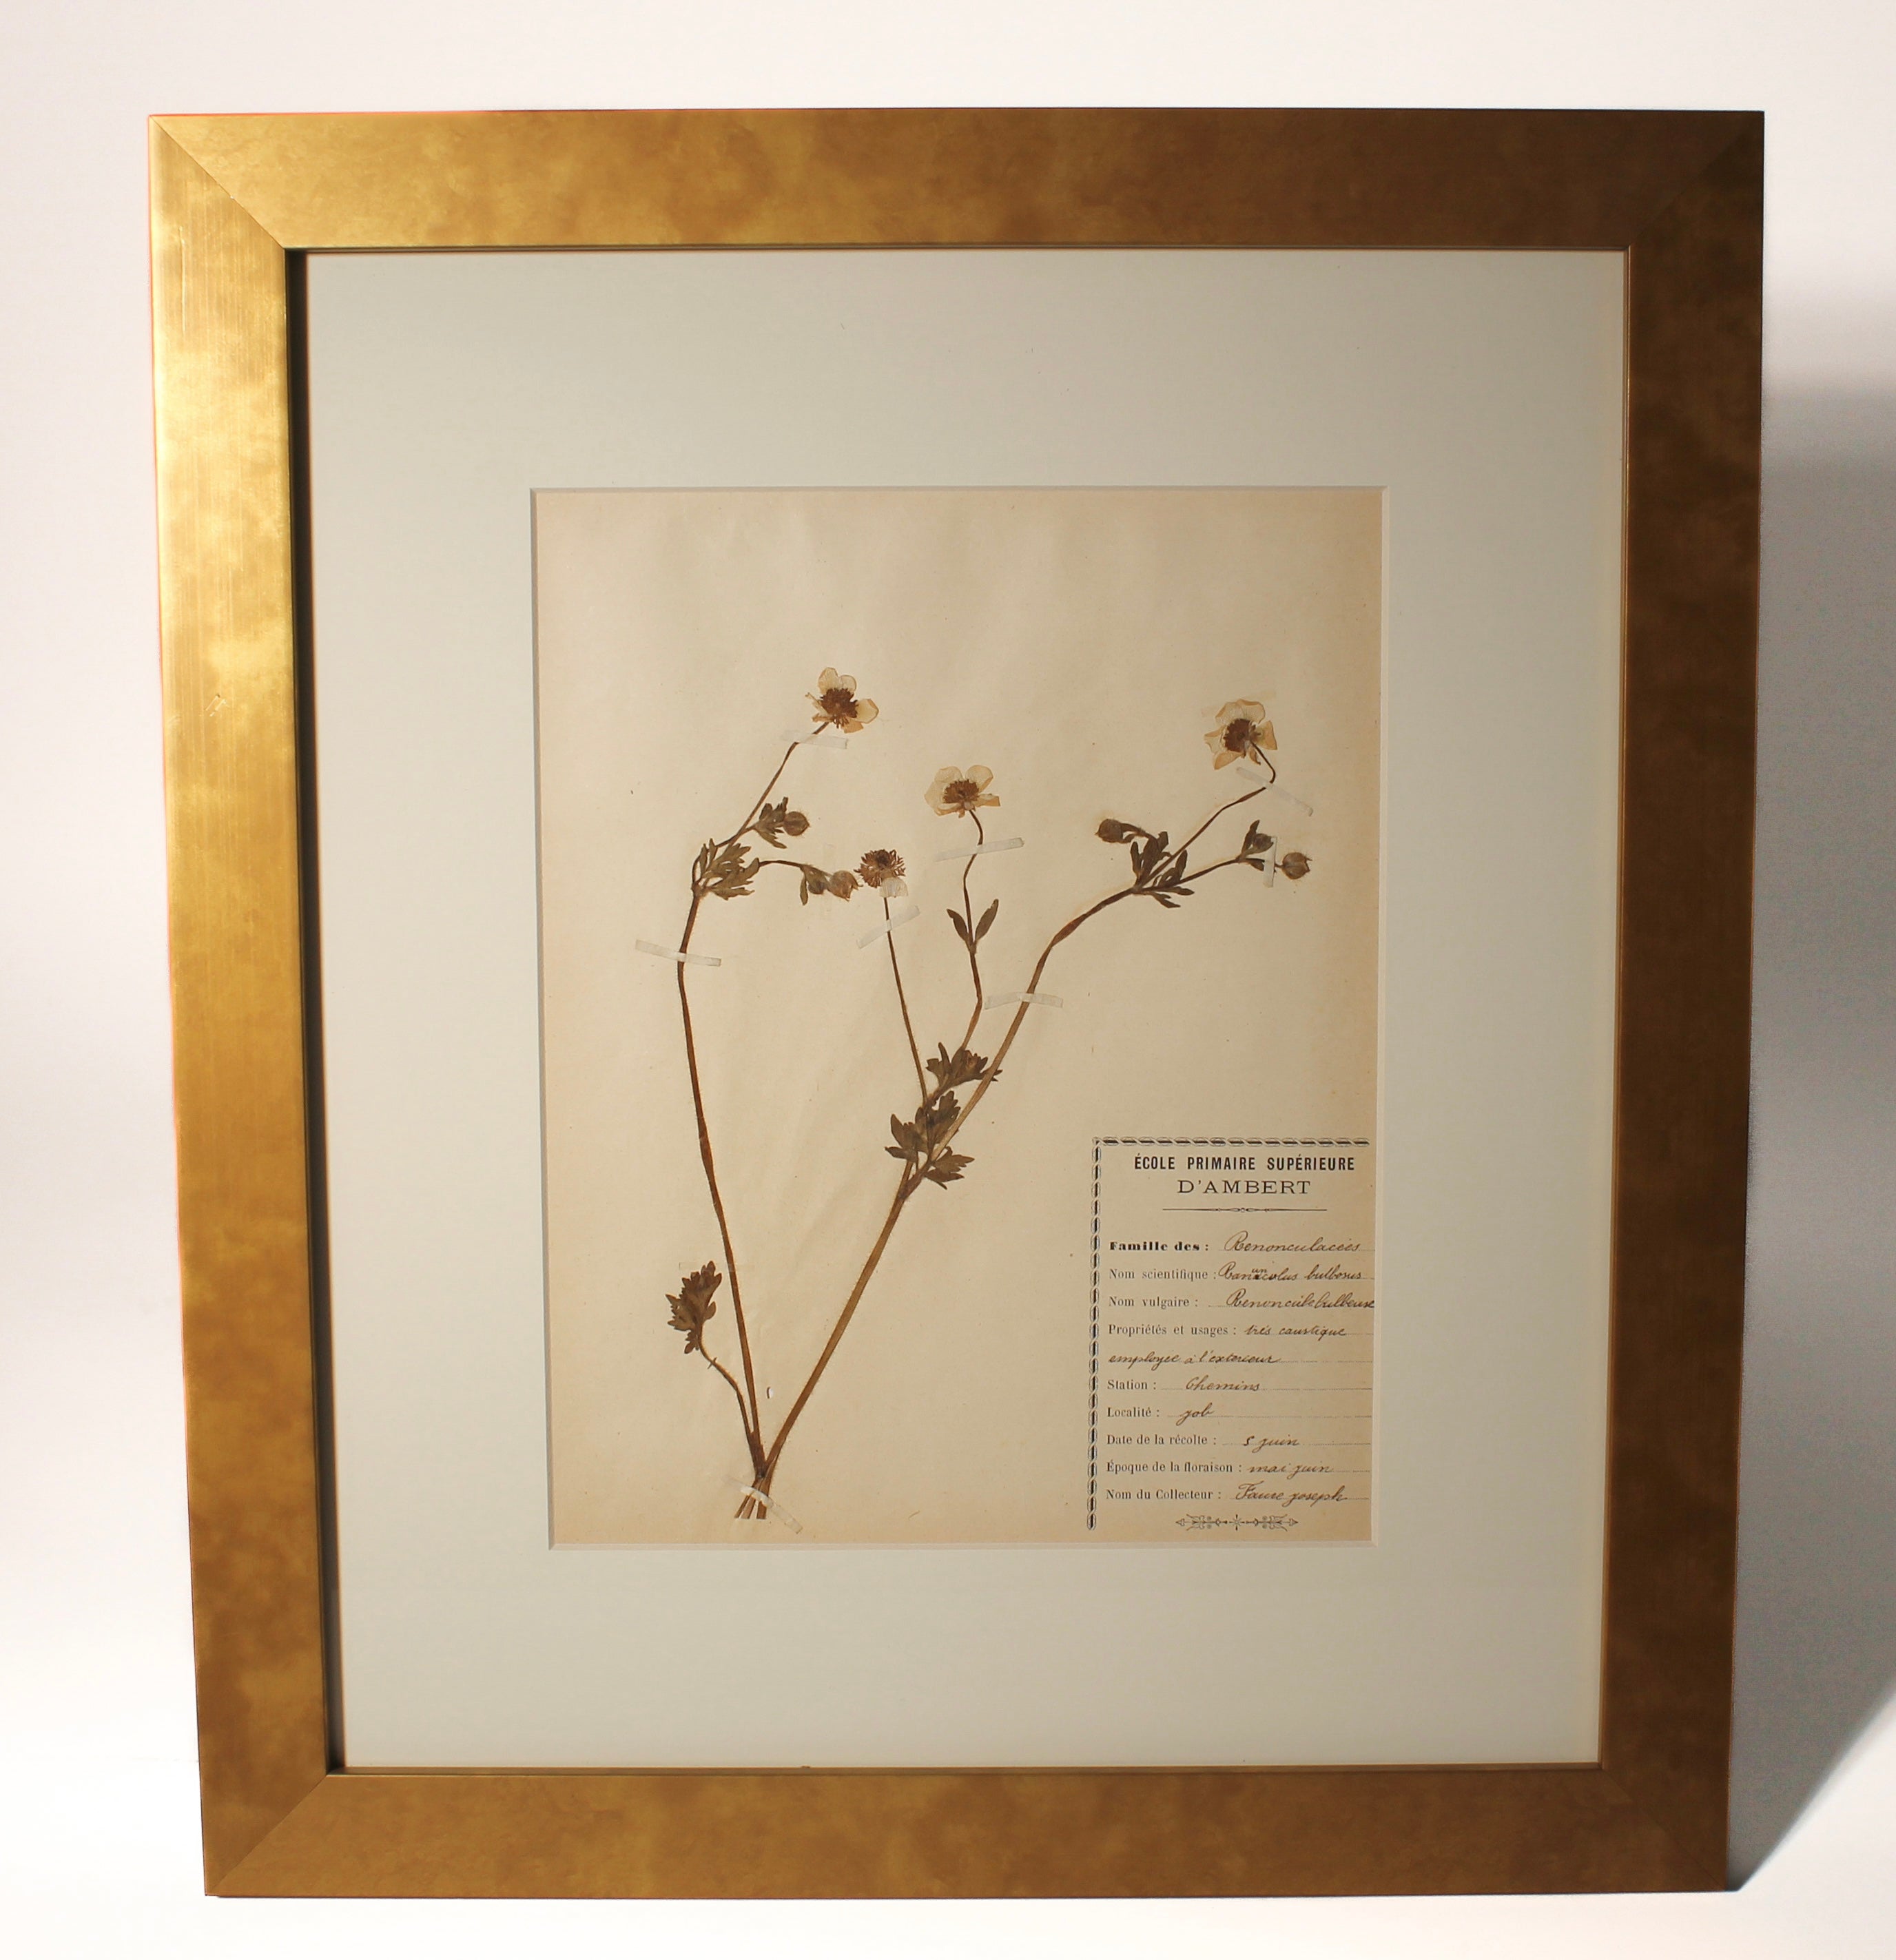 Framed art decor of antique pressed botanicals from France